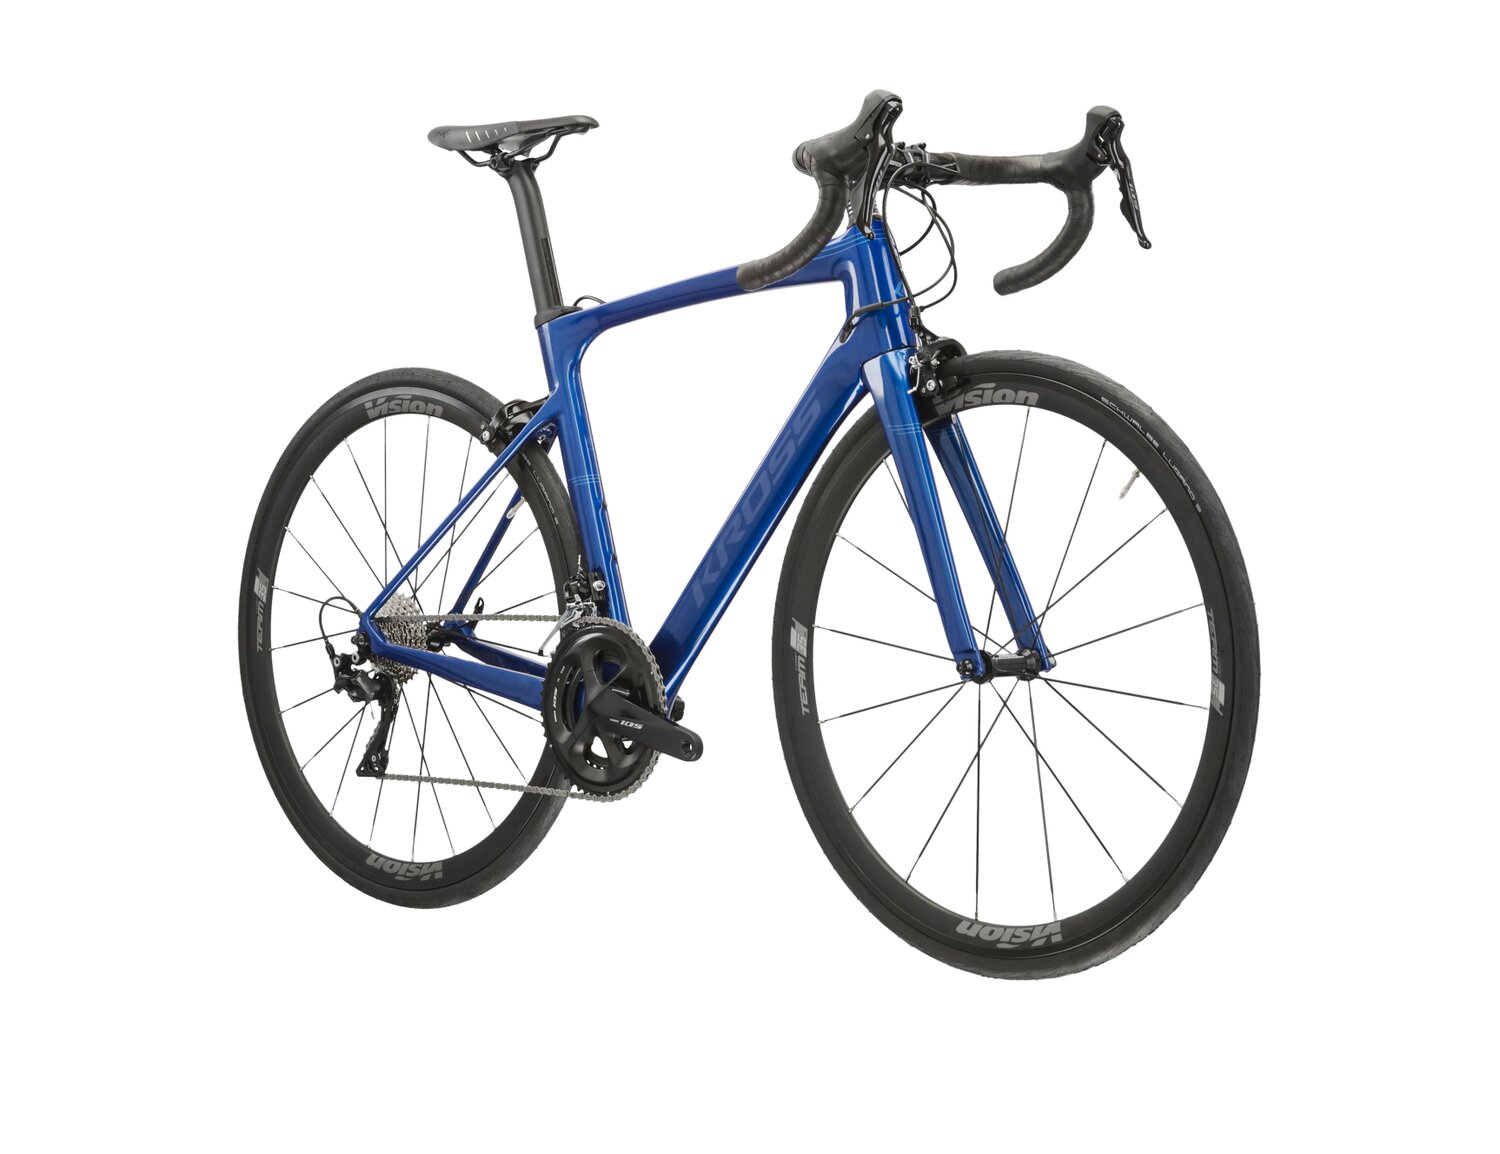  Rower szosowy KROSS Vento 7.0 na carbonowej ramie w kolorze niebieskim wyposażony w osprzęt Shimano 